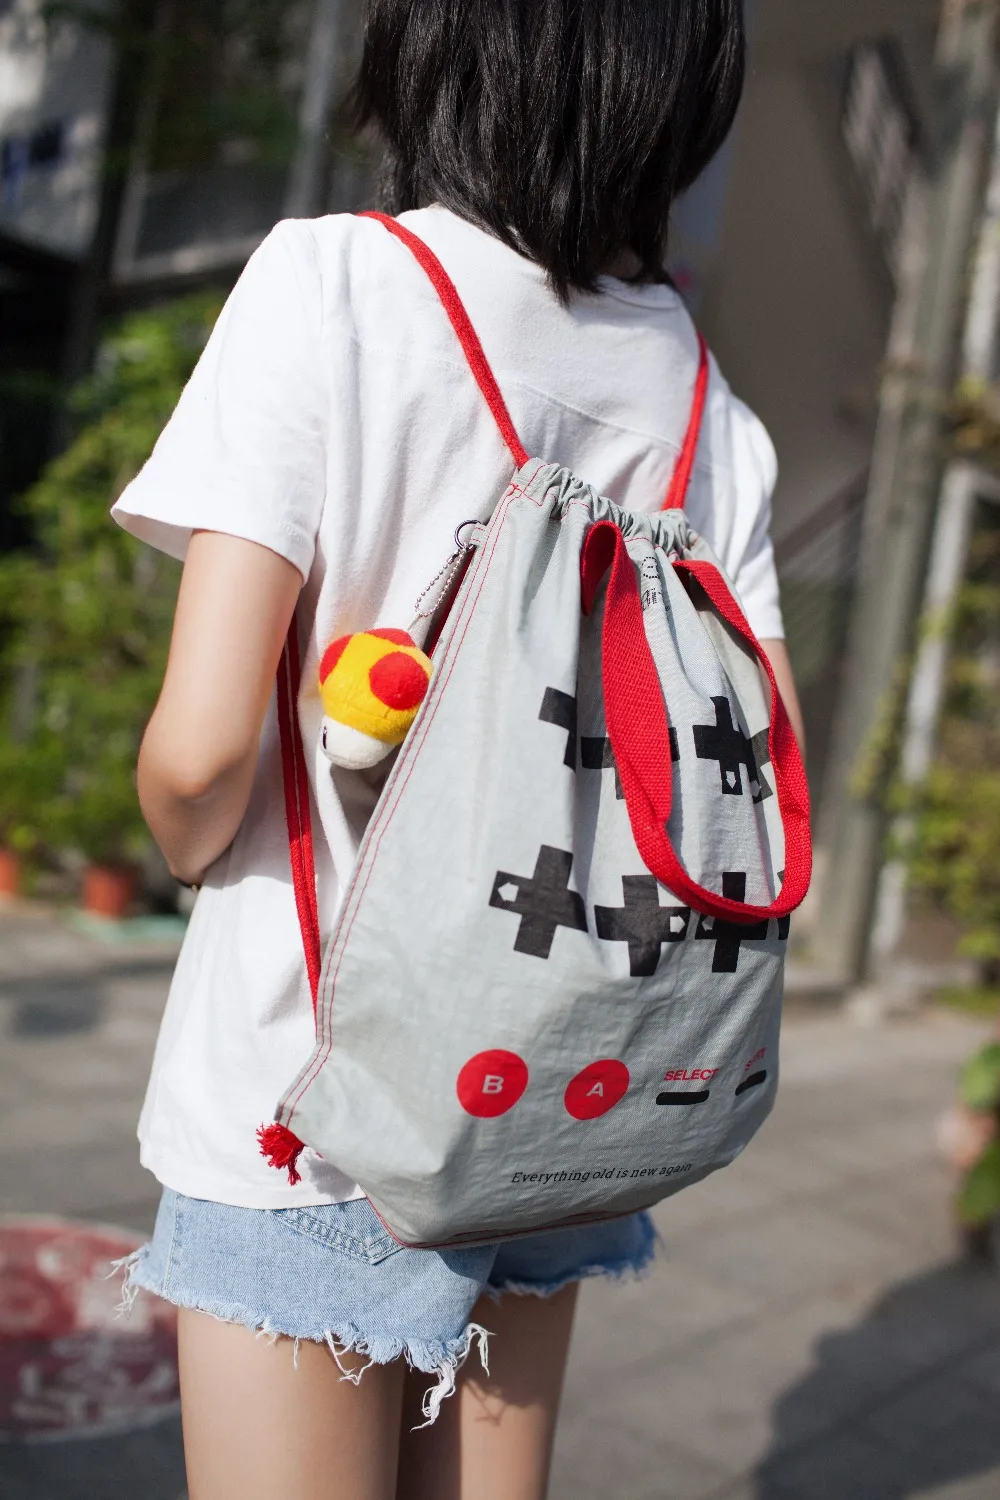 Официальный 8BitDo CONBAG луч порт сумка Водонепроницаемый складной рюкзак игровой стиль